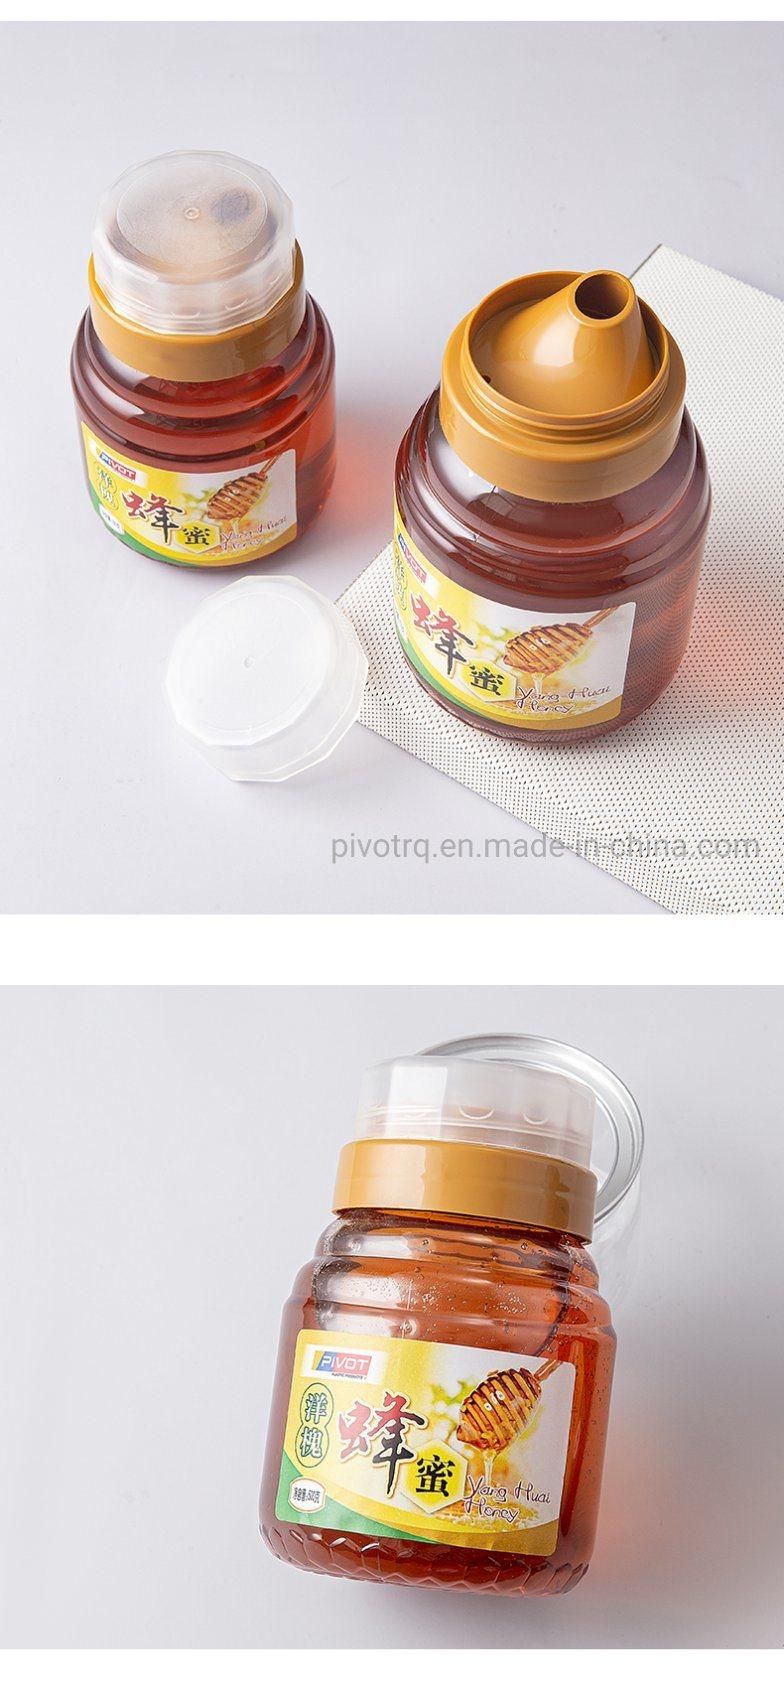 300g Honey Bottle Pet Plastic Food Grade Honey Packaging